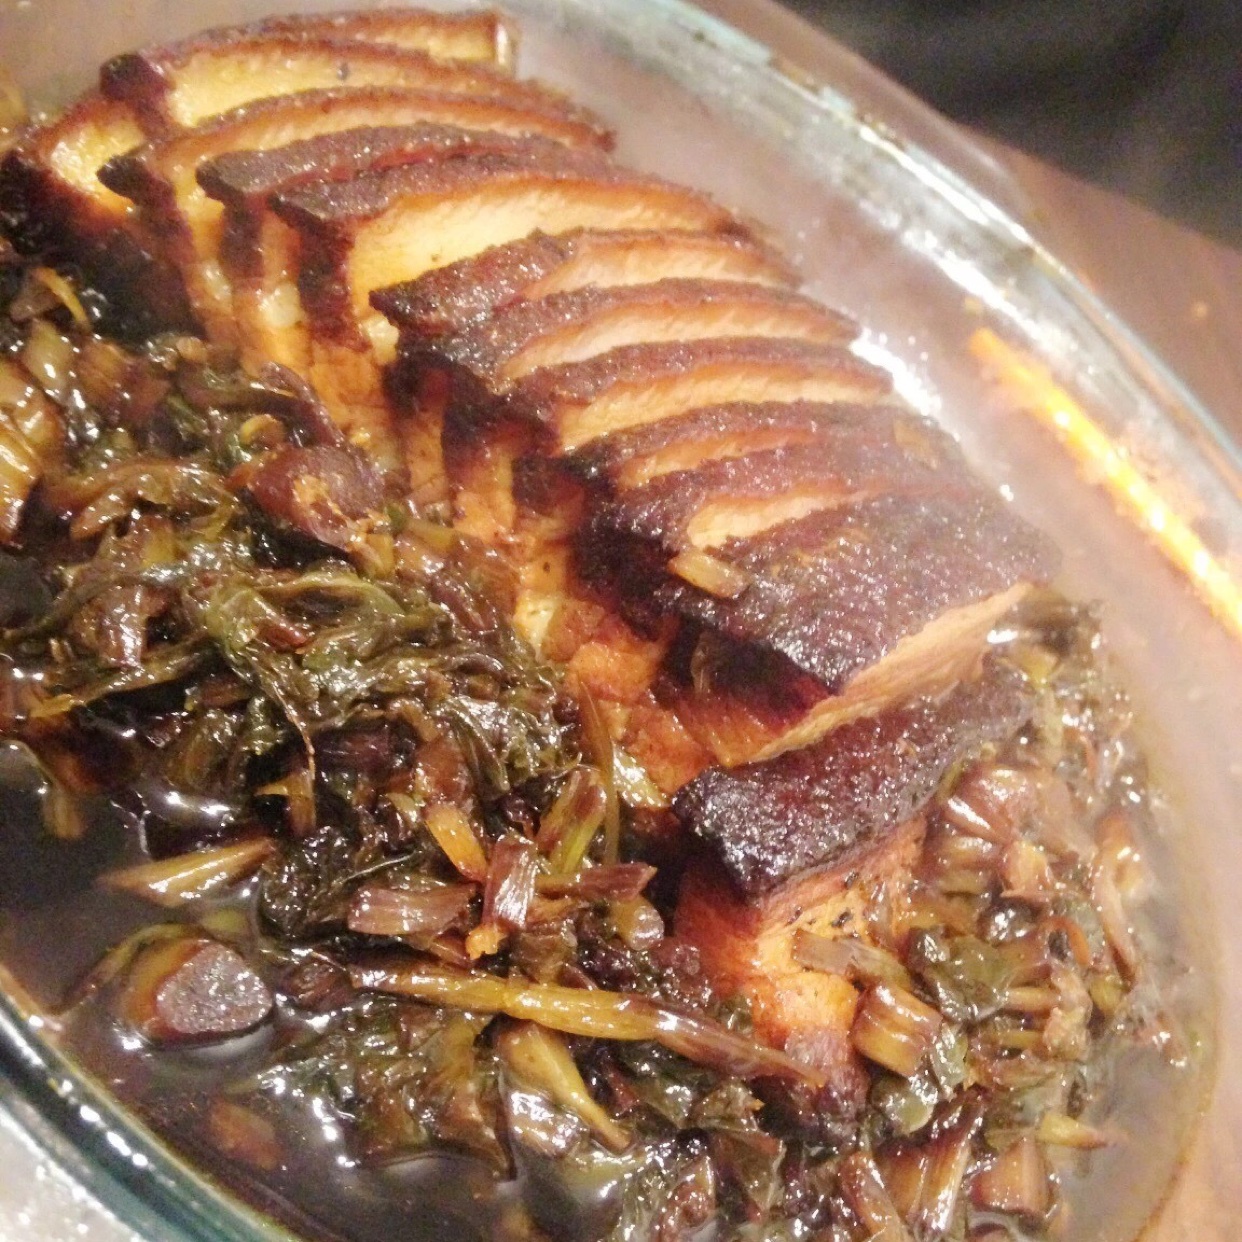 茶树菇梅菜扣肉